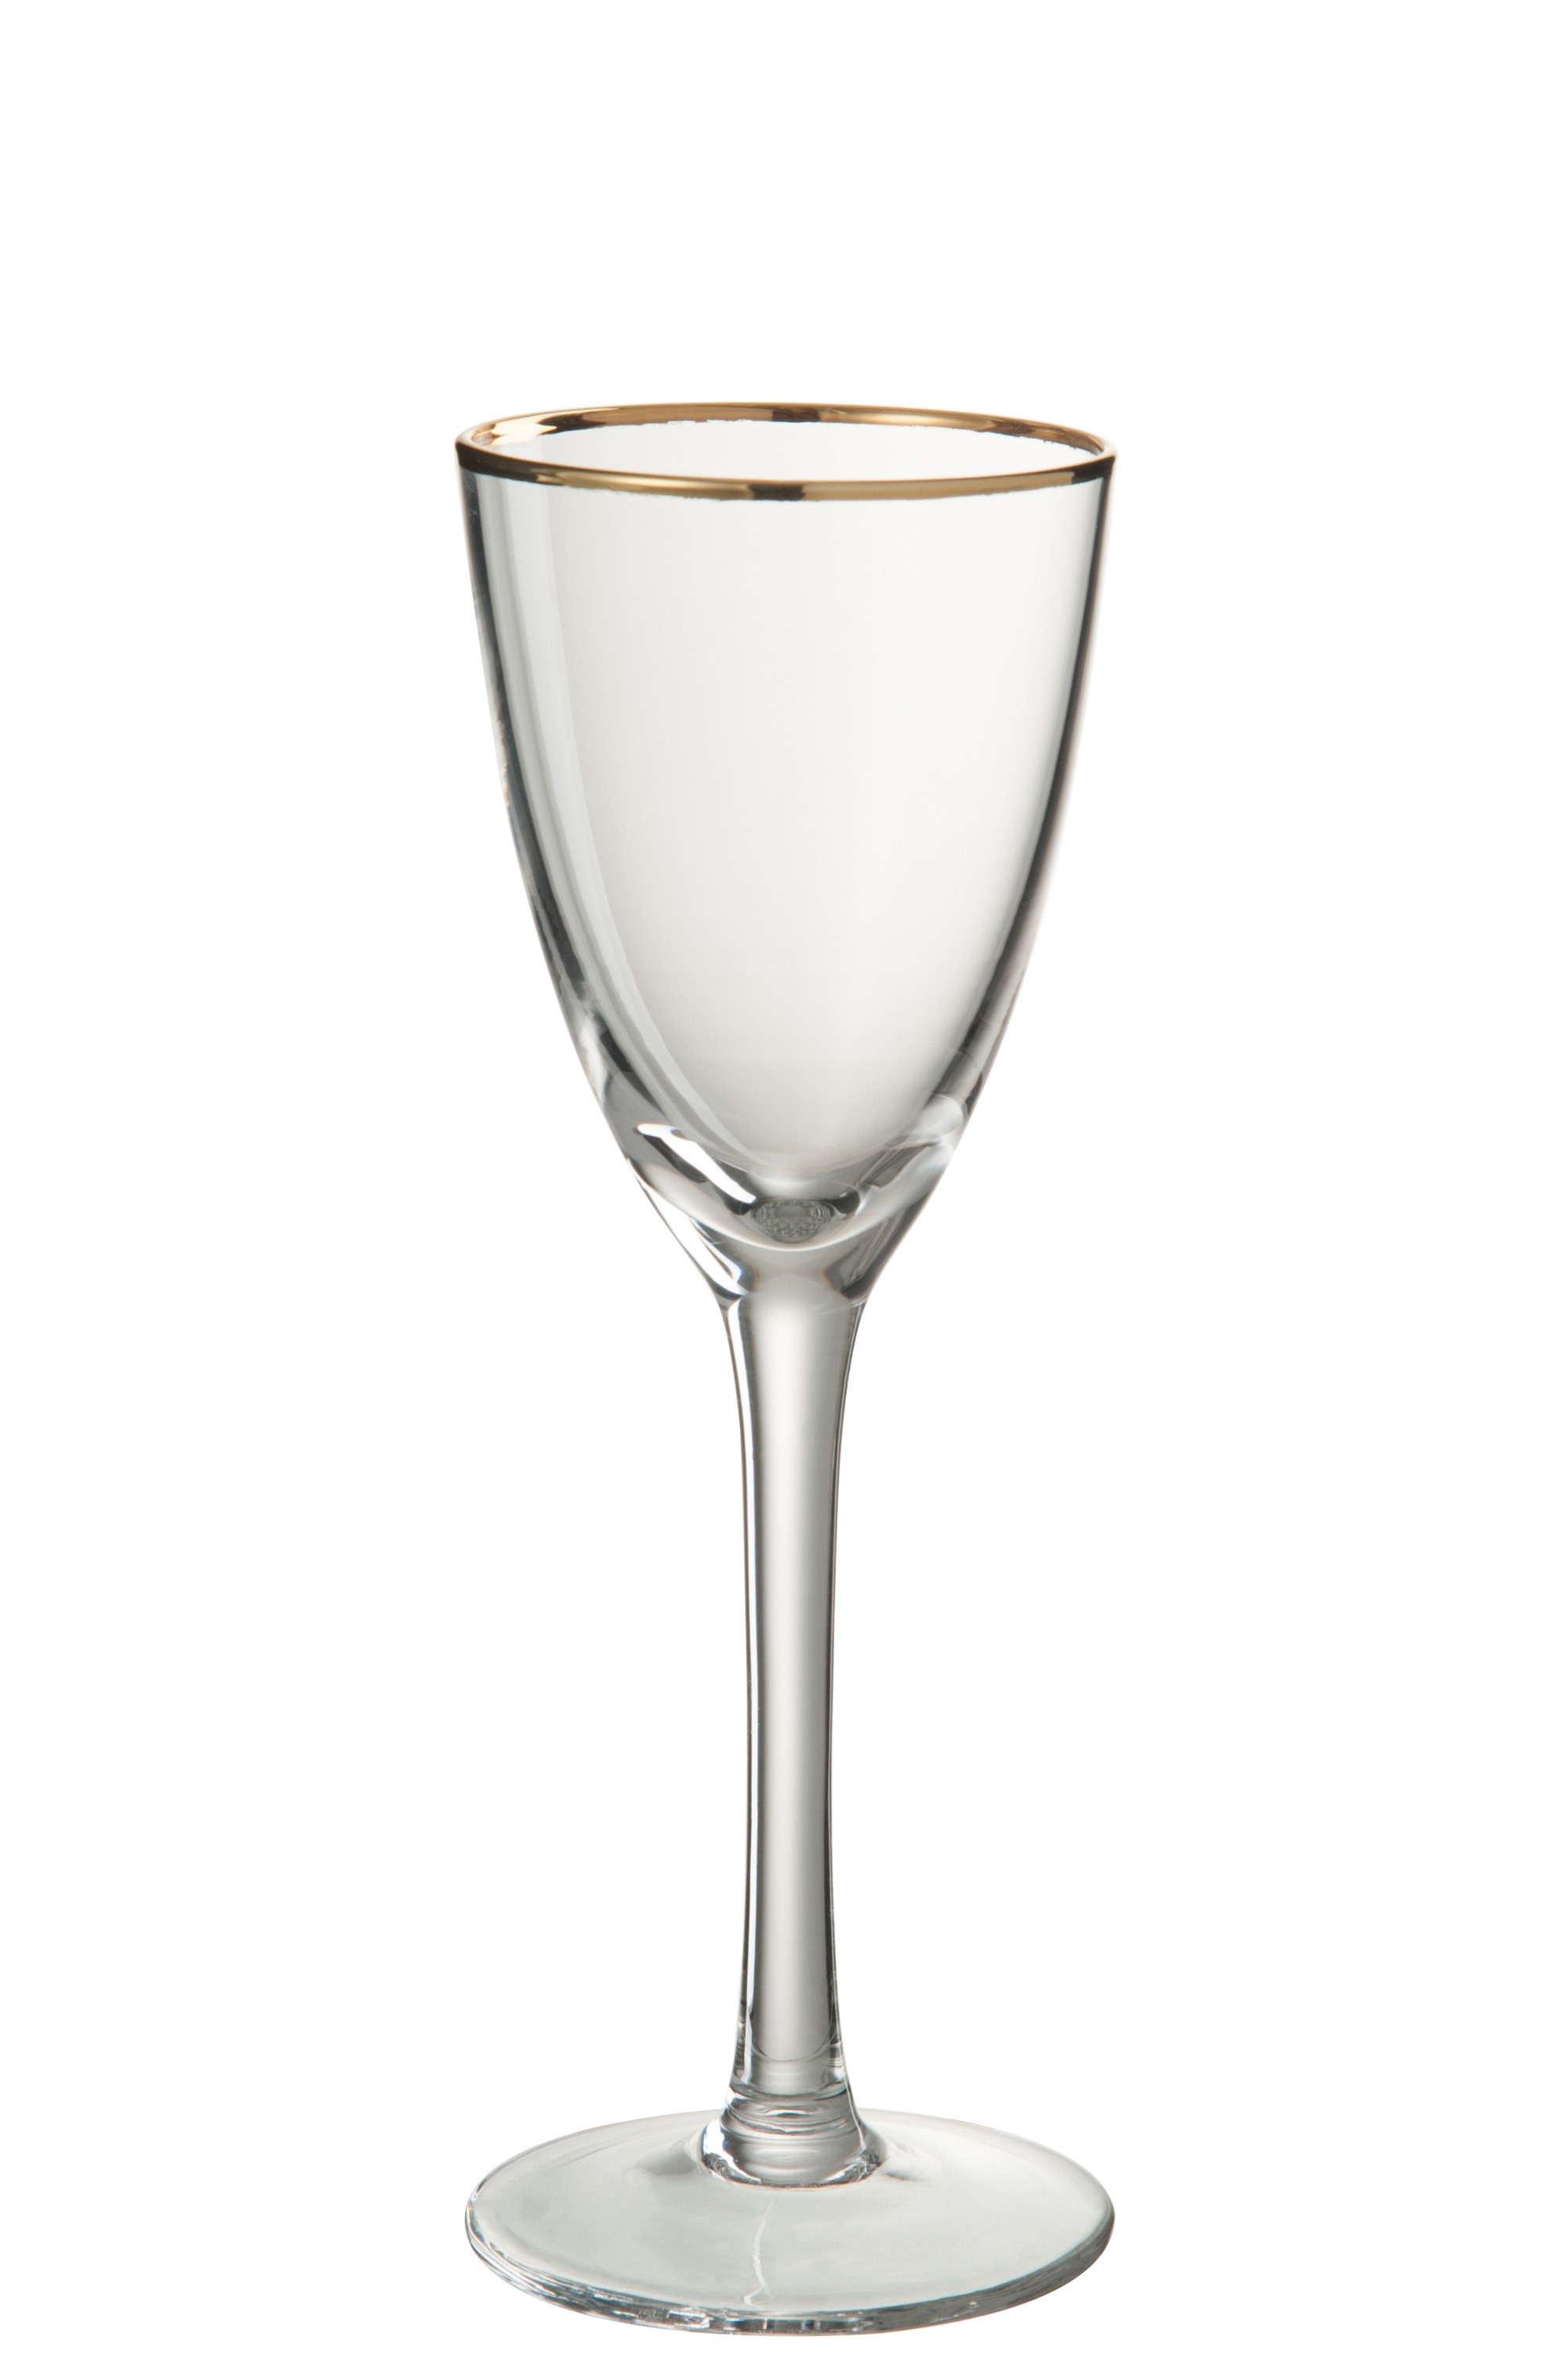 Sklenička na bílé víno se zlatým okrajem - 8*8*22 cm J-Line by Jolipa